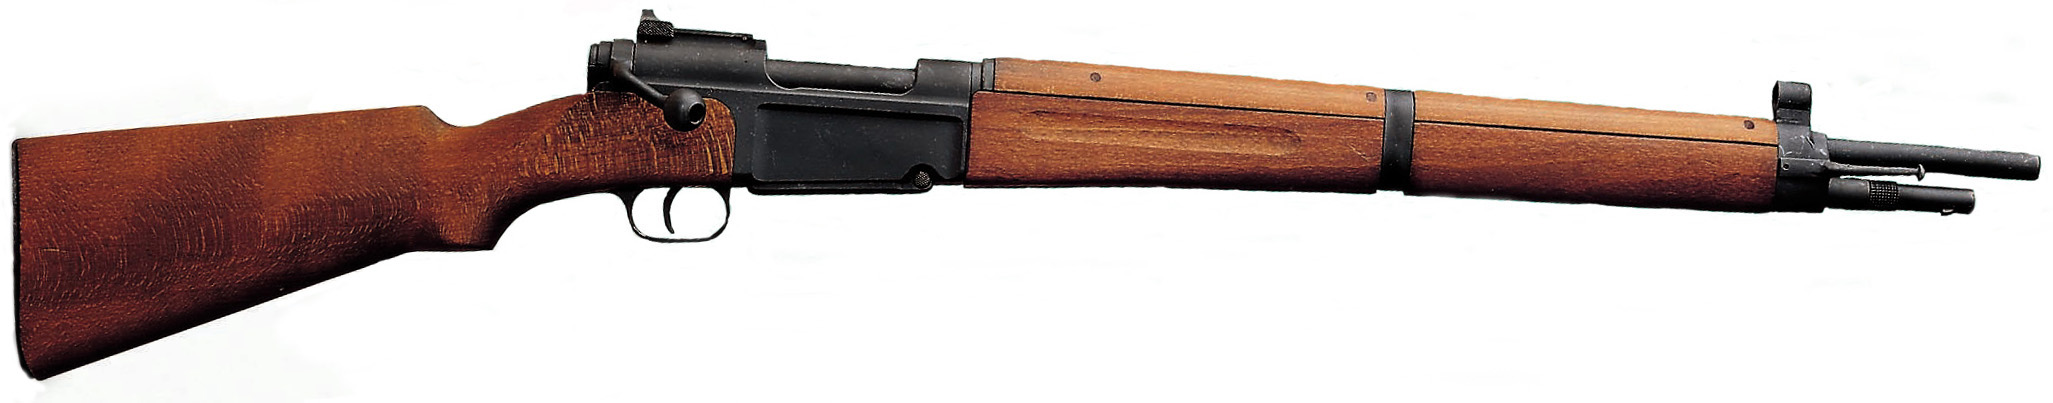 Le fusil Manufacture d'Armes de Saint-Etienne modèle 1936 dit MAS 36, fusil standard de l'armée de terre en 1948